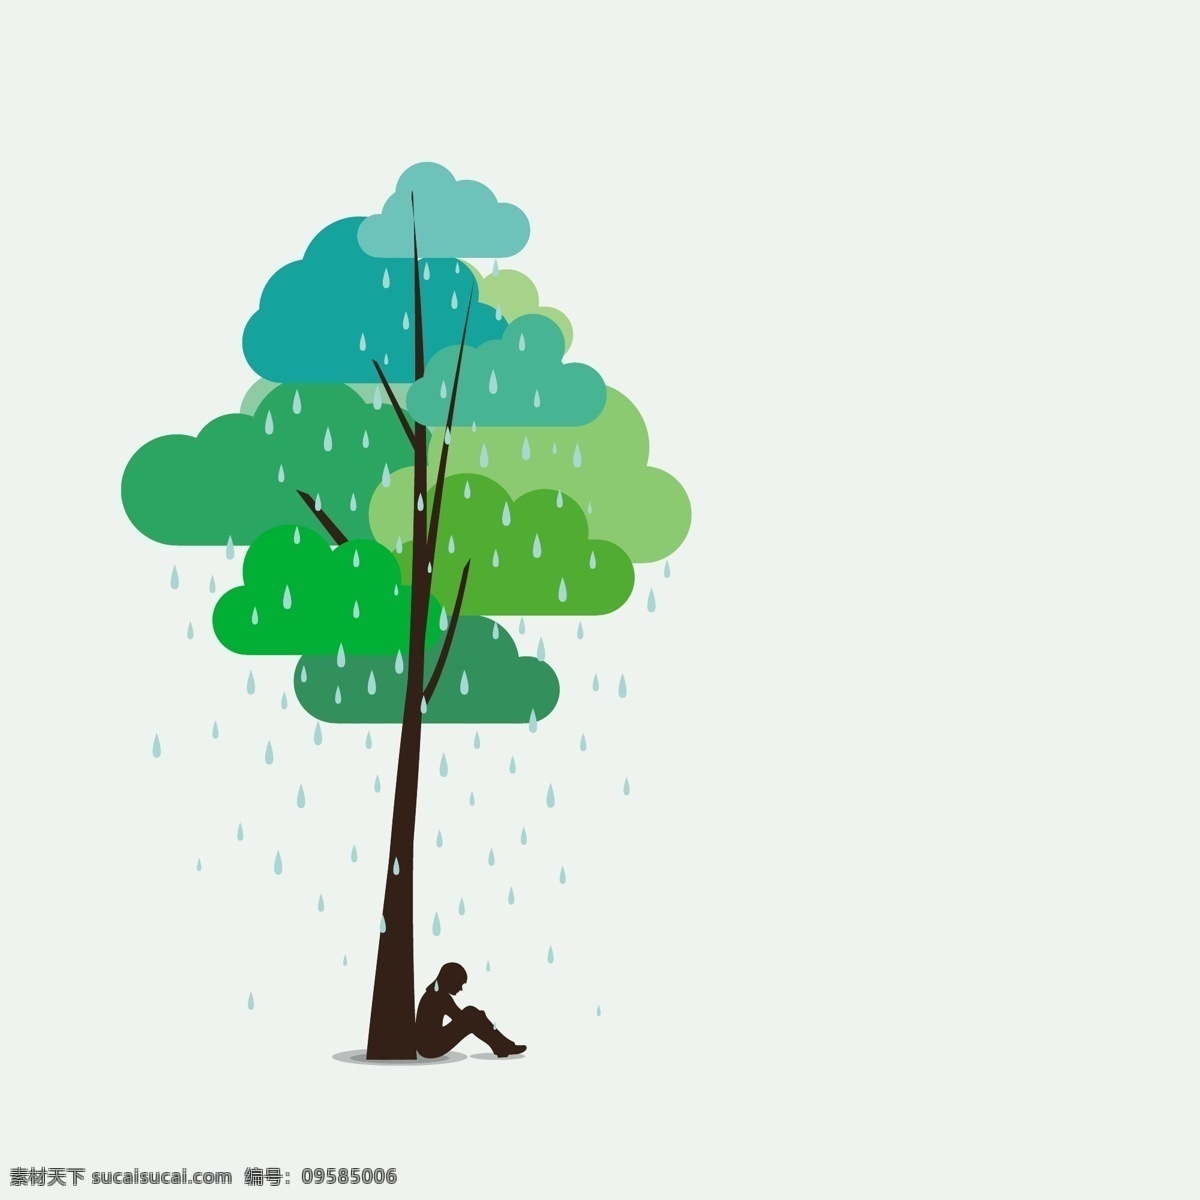 下雨 午后 插画 矢量 eps格式 女子 矢量图 树木 下午 含 预览 图